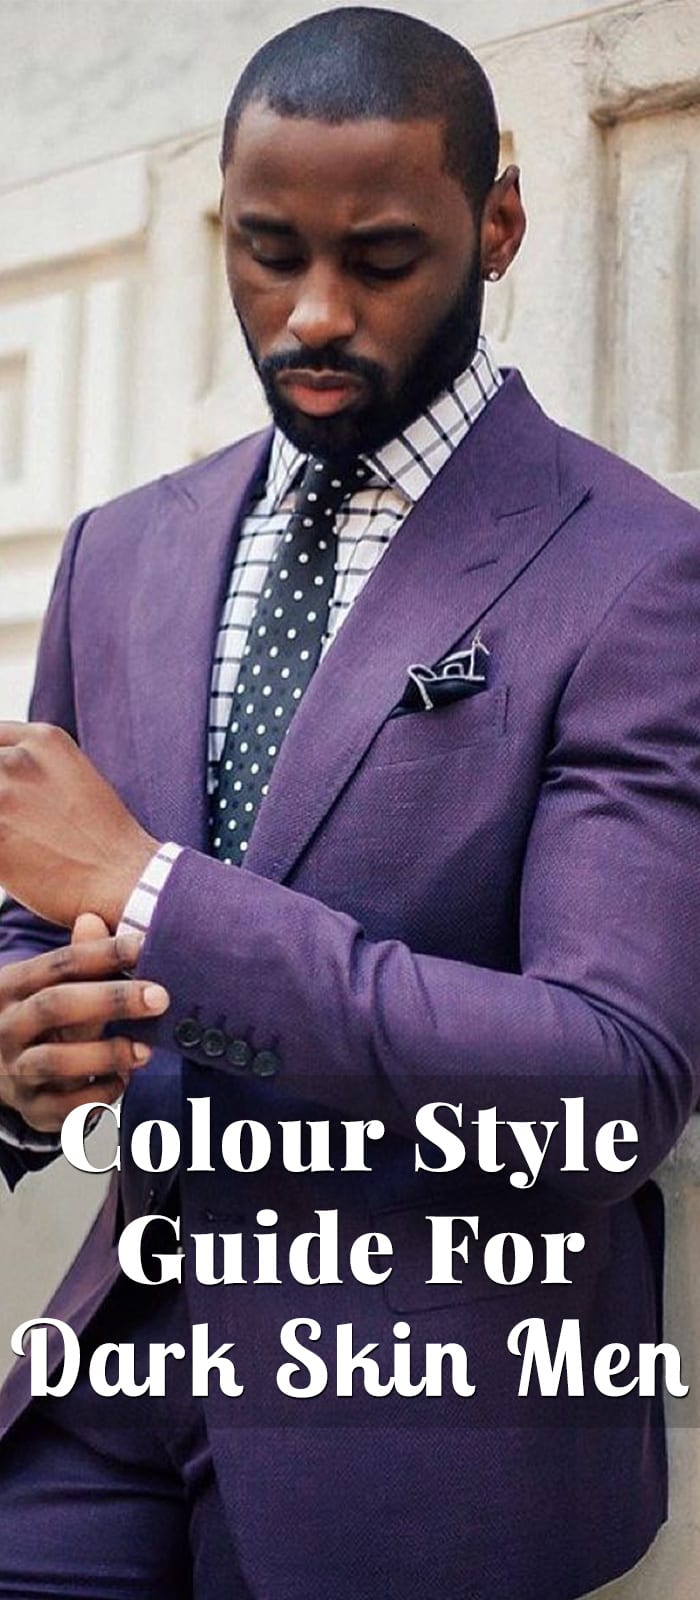 Colour Style Guide For Dark Skin Men